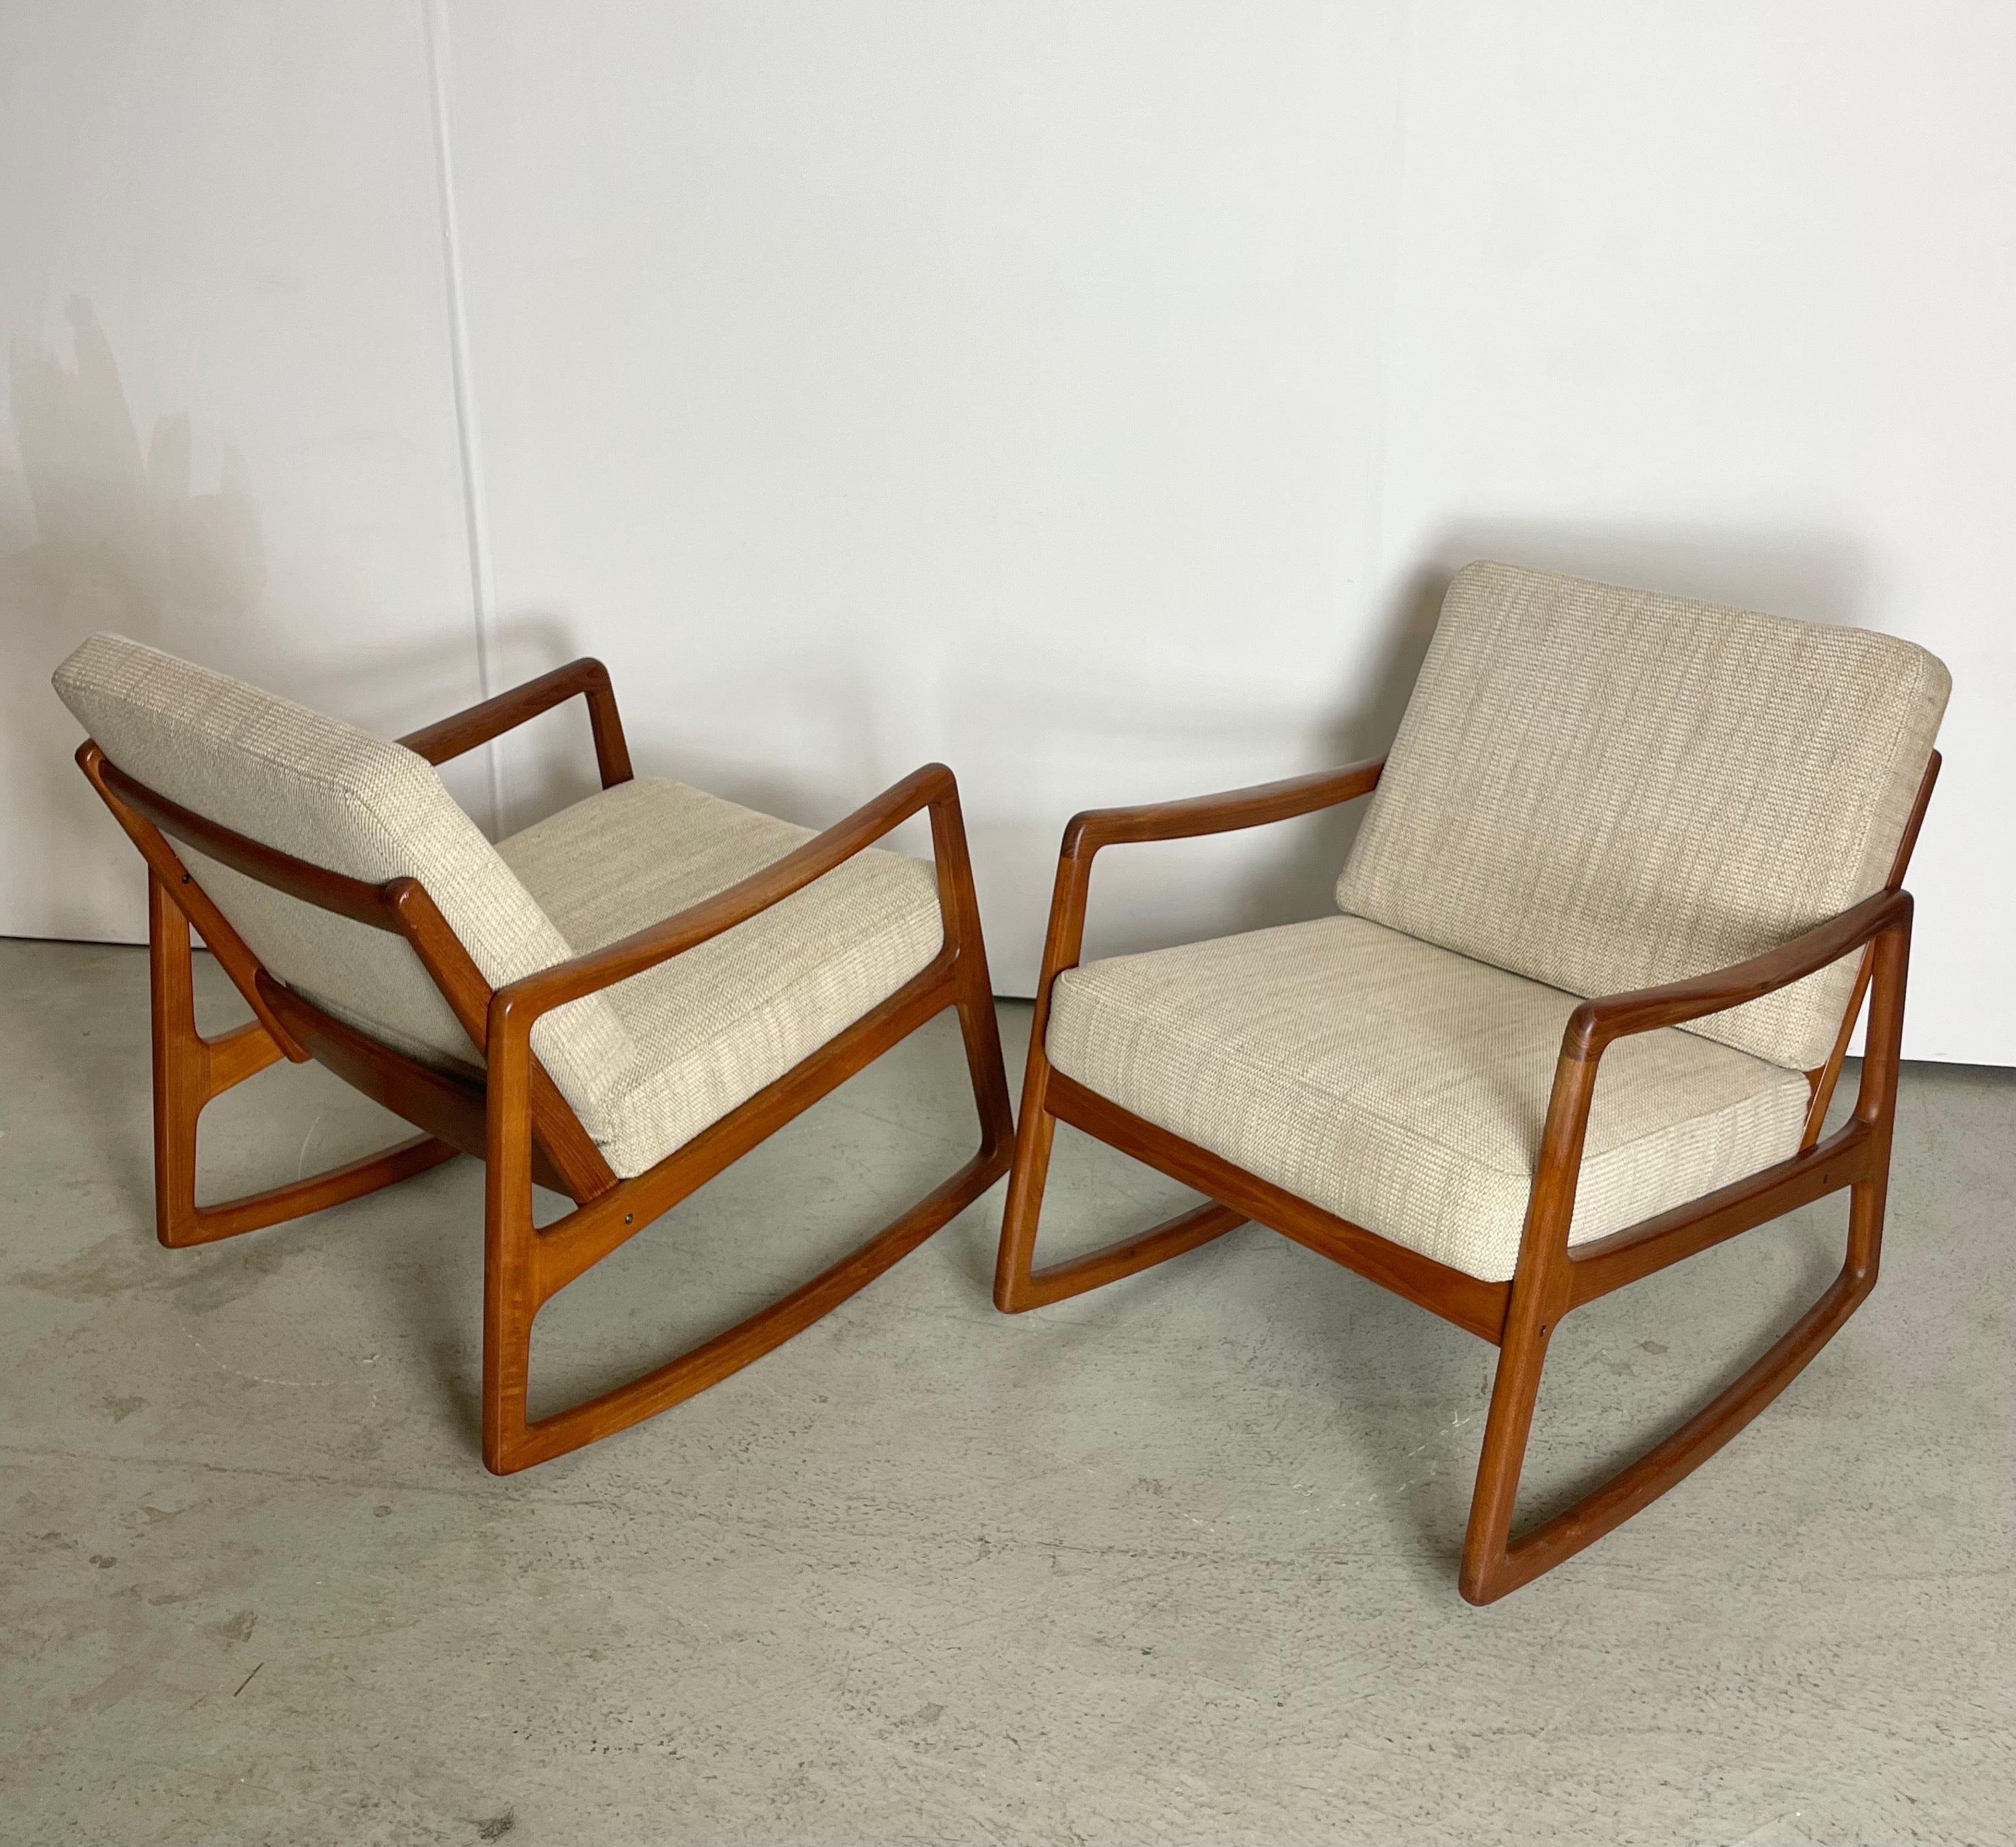 Rare paire de fauteuils à bascule du milieu du siècle conçus par le professeur danois Ole Wanscher. Fabriqué au Danemark par France & Søn dans les années 1950. Il porte la marque du fabricant et se compose d'un cadre robuste en bois de teck, d'un